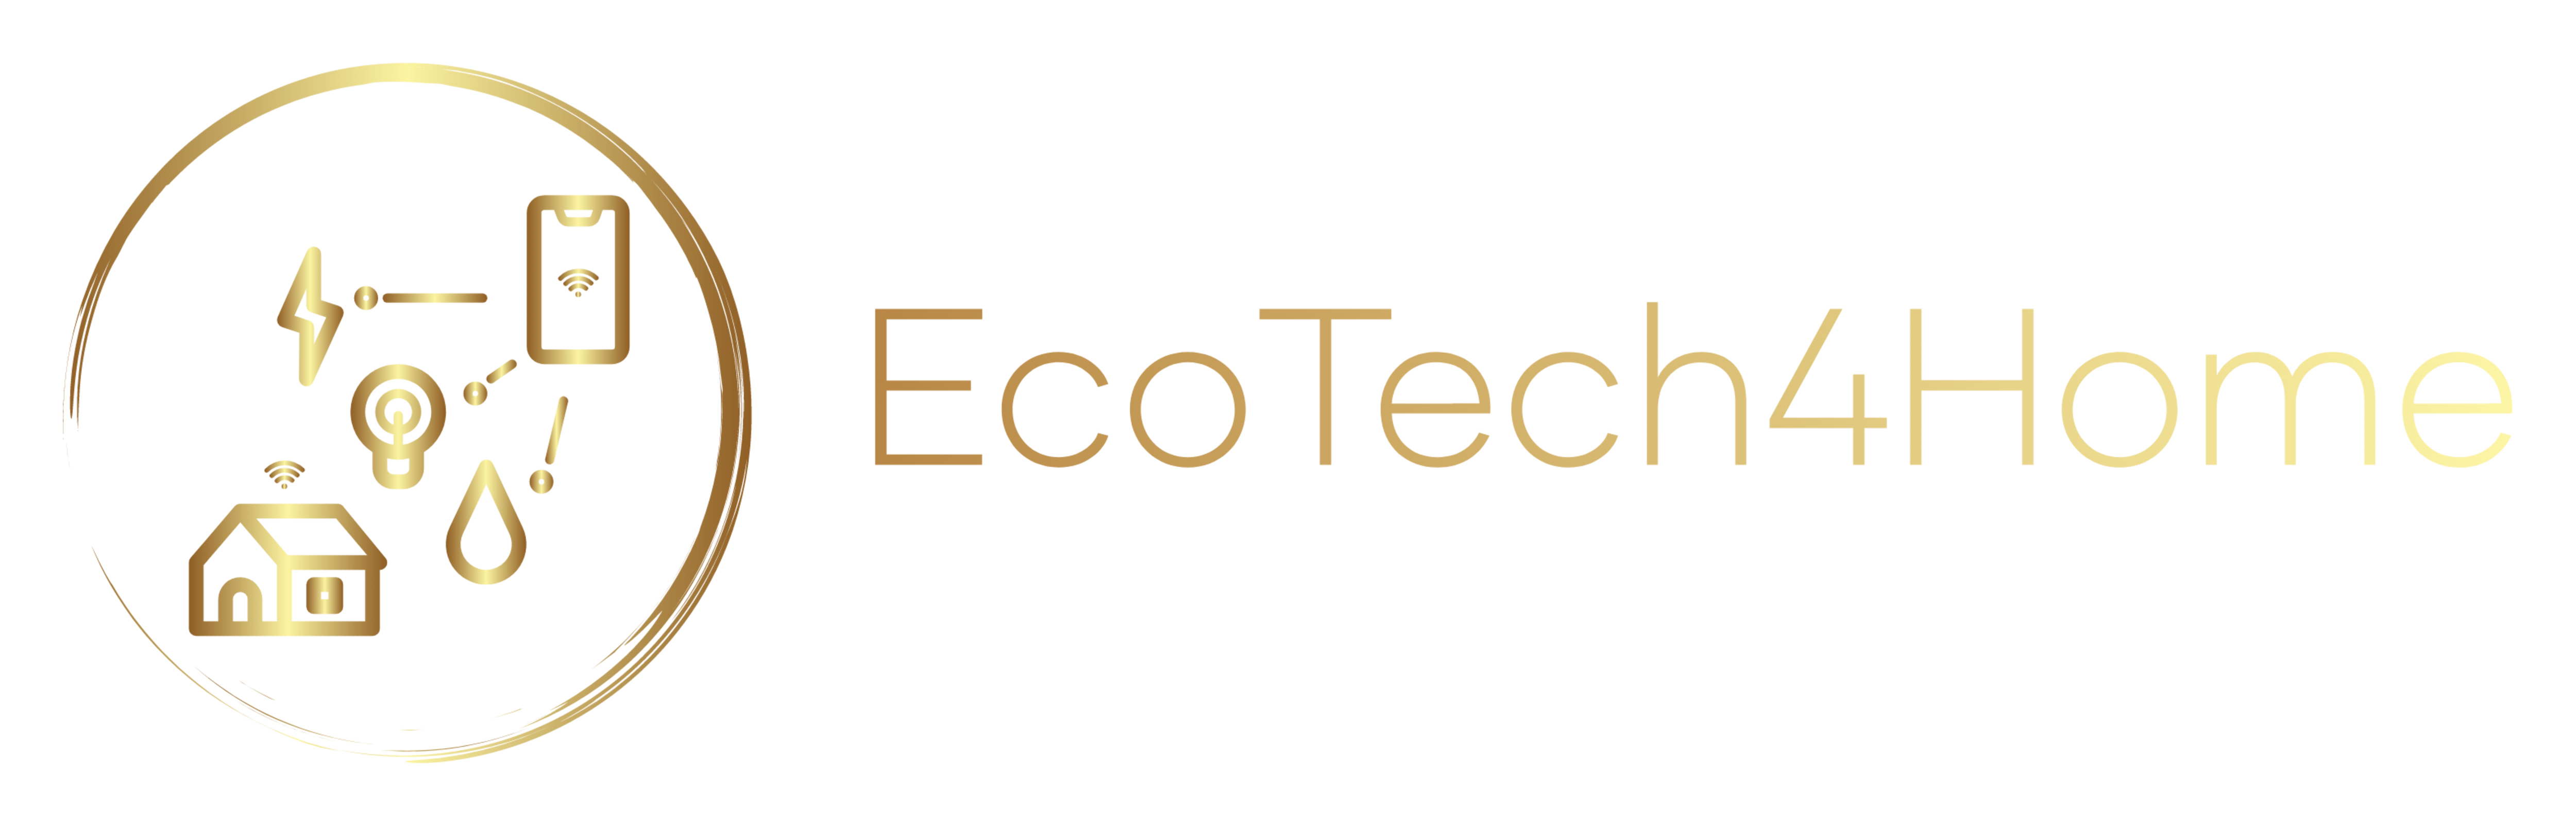 EcoTech4Home